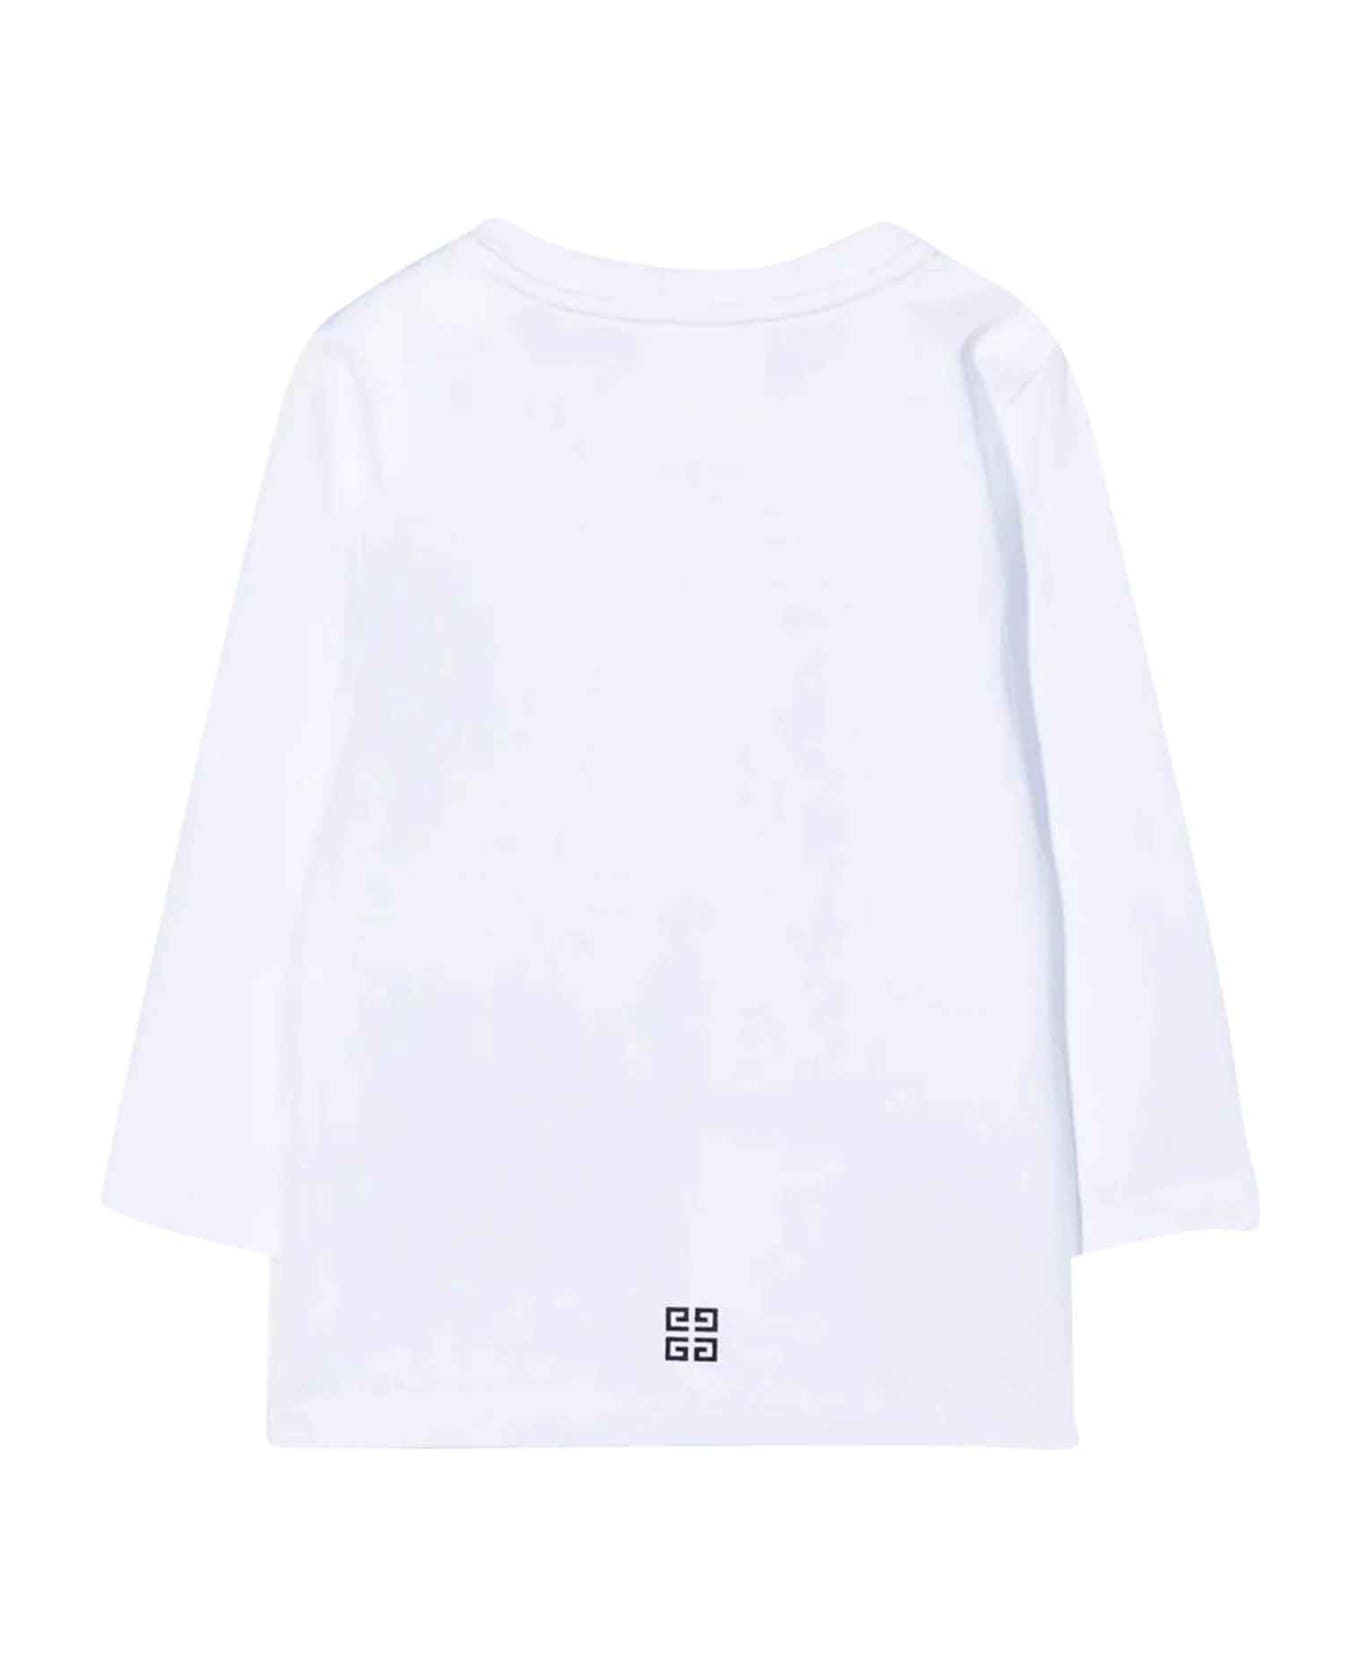 Givenchy White T-shirt Baby Unisex - Bianco